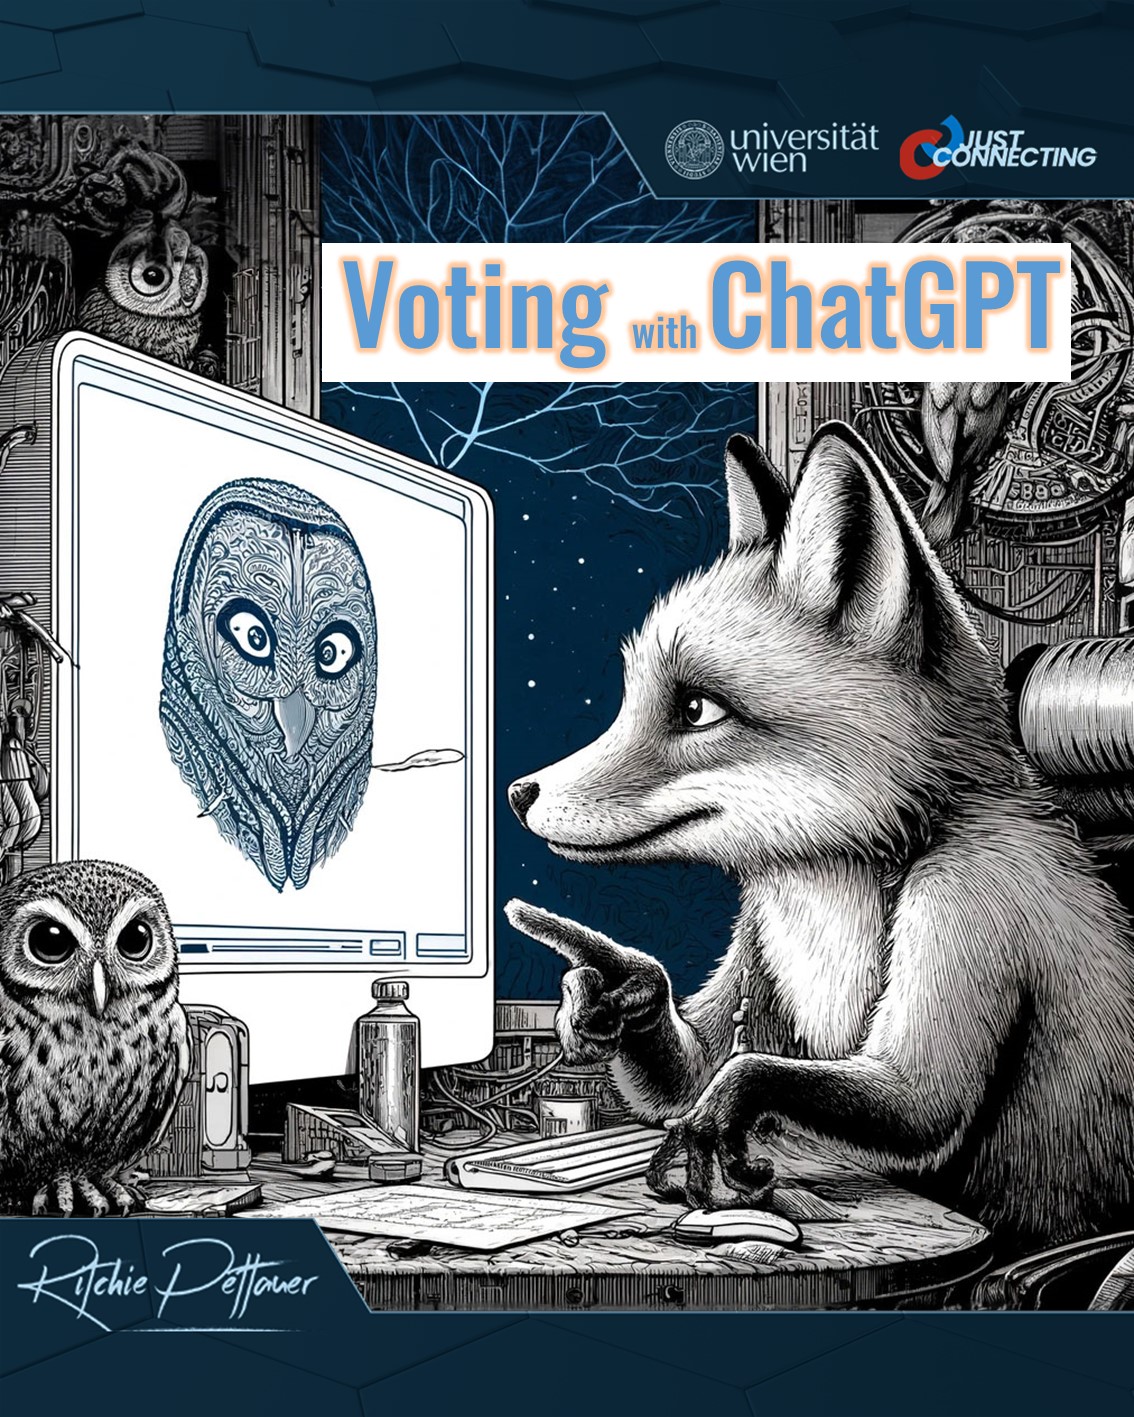 Europawahlen: Den politischen Dschungel mit ChatGPT lichten